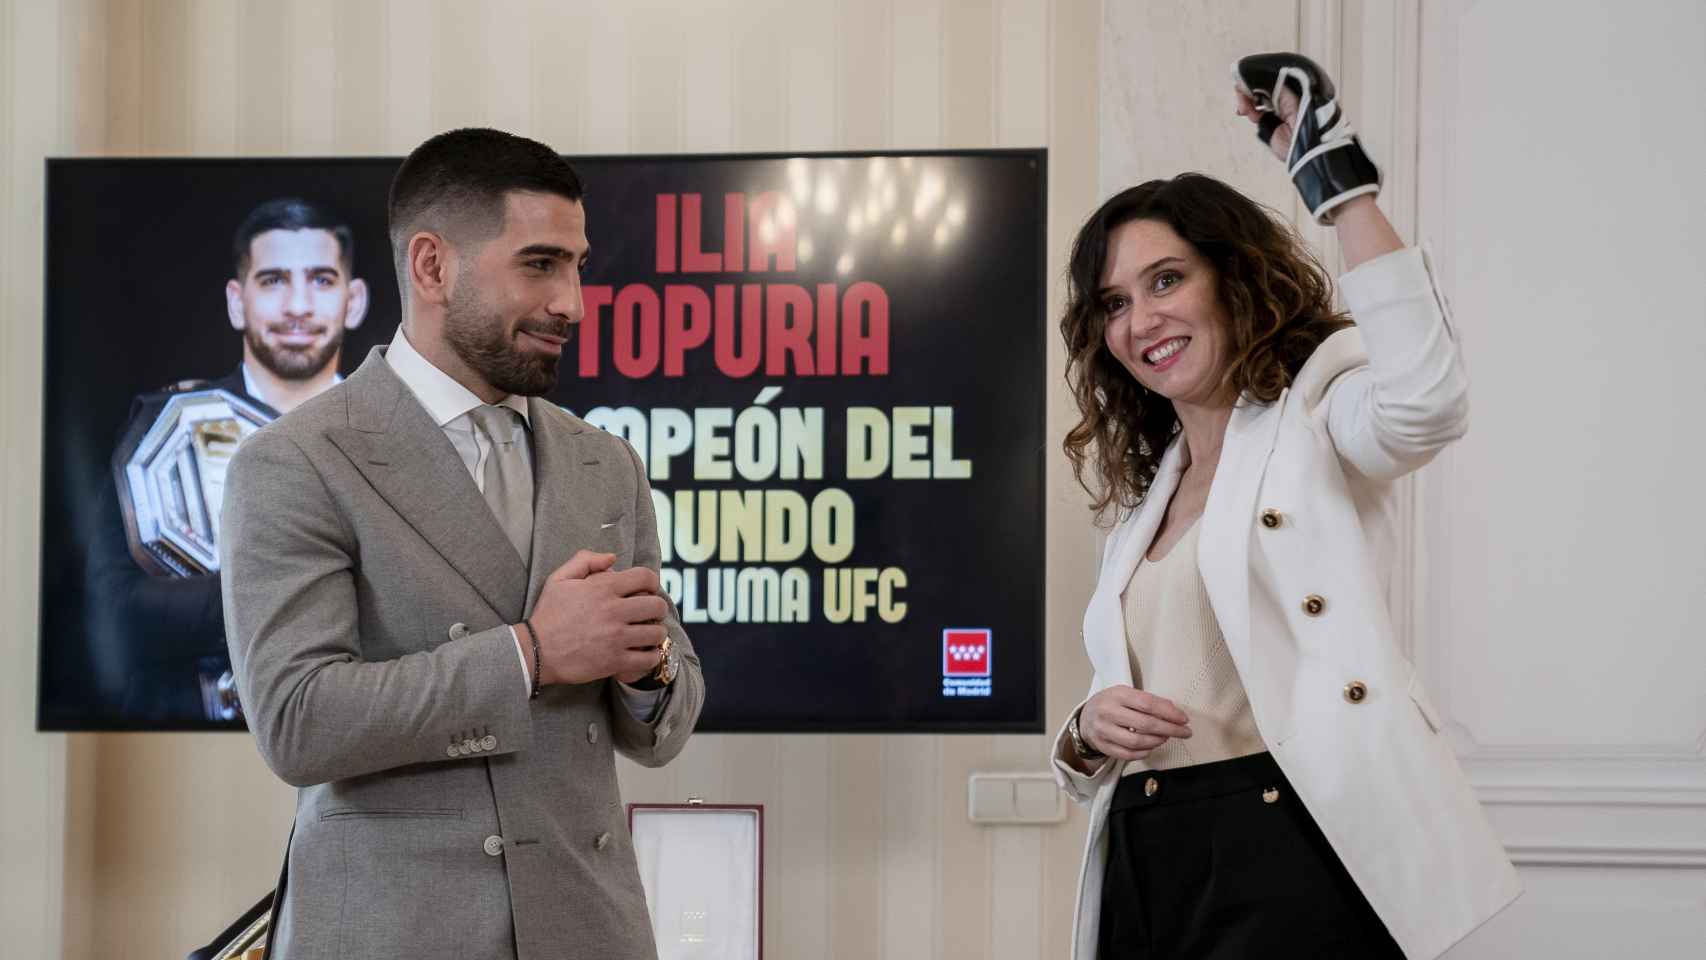 Recepción de Isabel Díaz Ayuso a Ilia Topuria, campeón de la UFC, en la sede de la Comunidad de Madrid